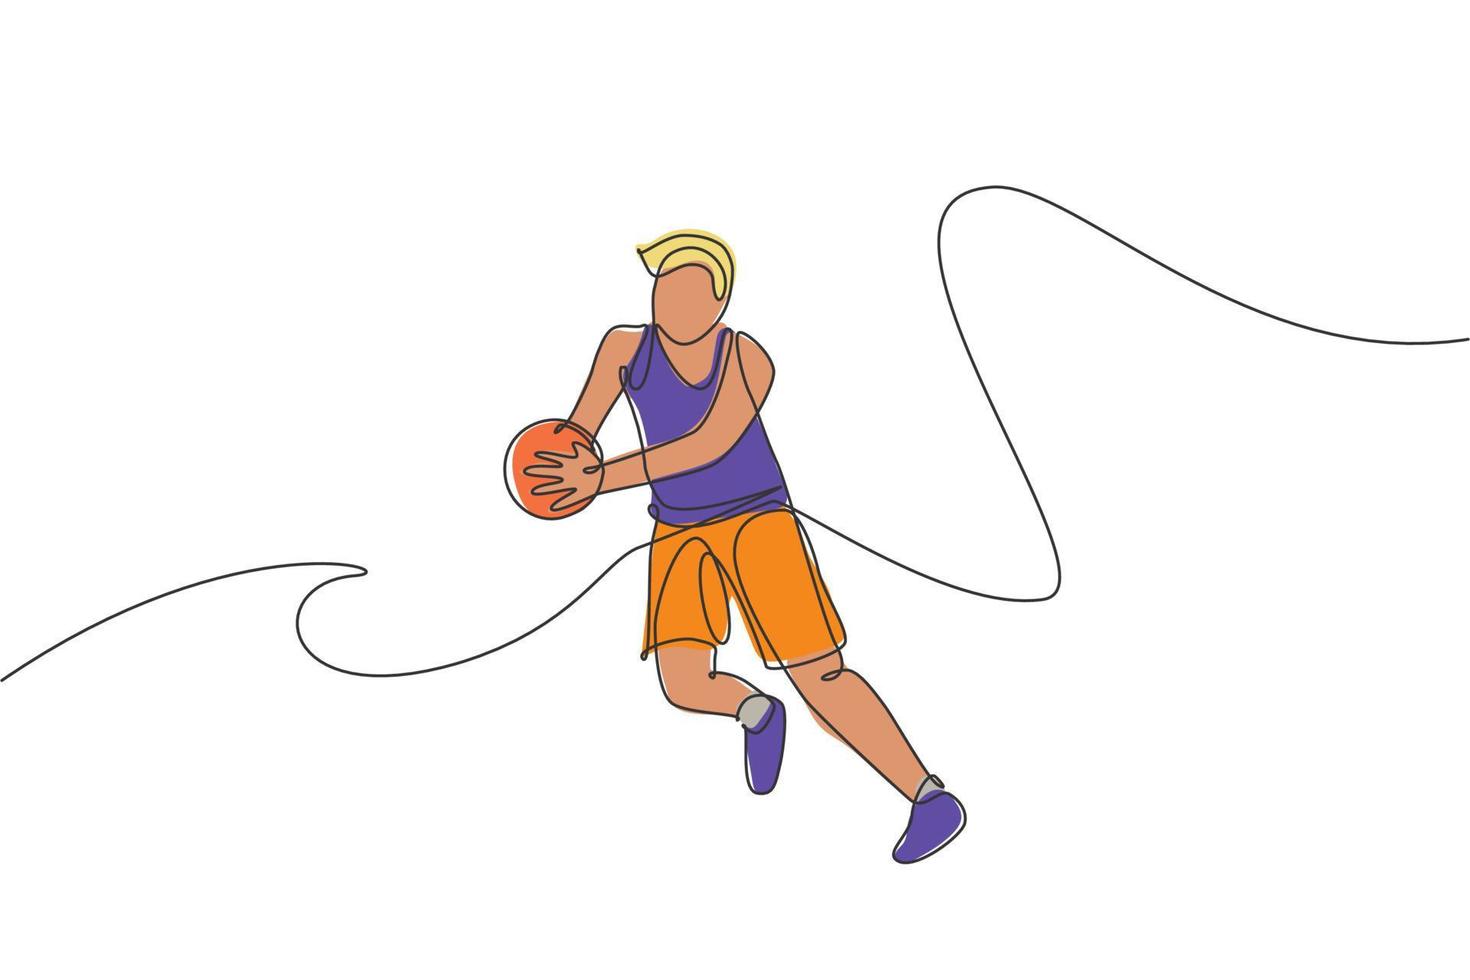 un disegno a linea singola di un giovane energico giocatore di basket cattura l'illustrazione vettoriale della palla. concetto di competizione sportiva. moderno disegno a linea continua per poster di tornei di basket